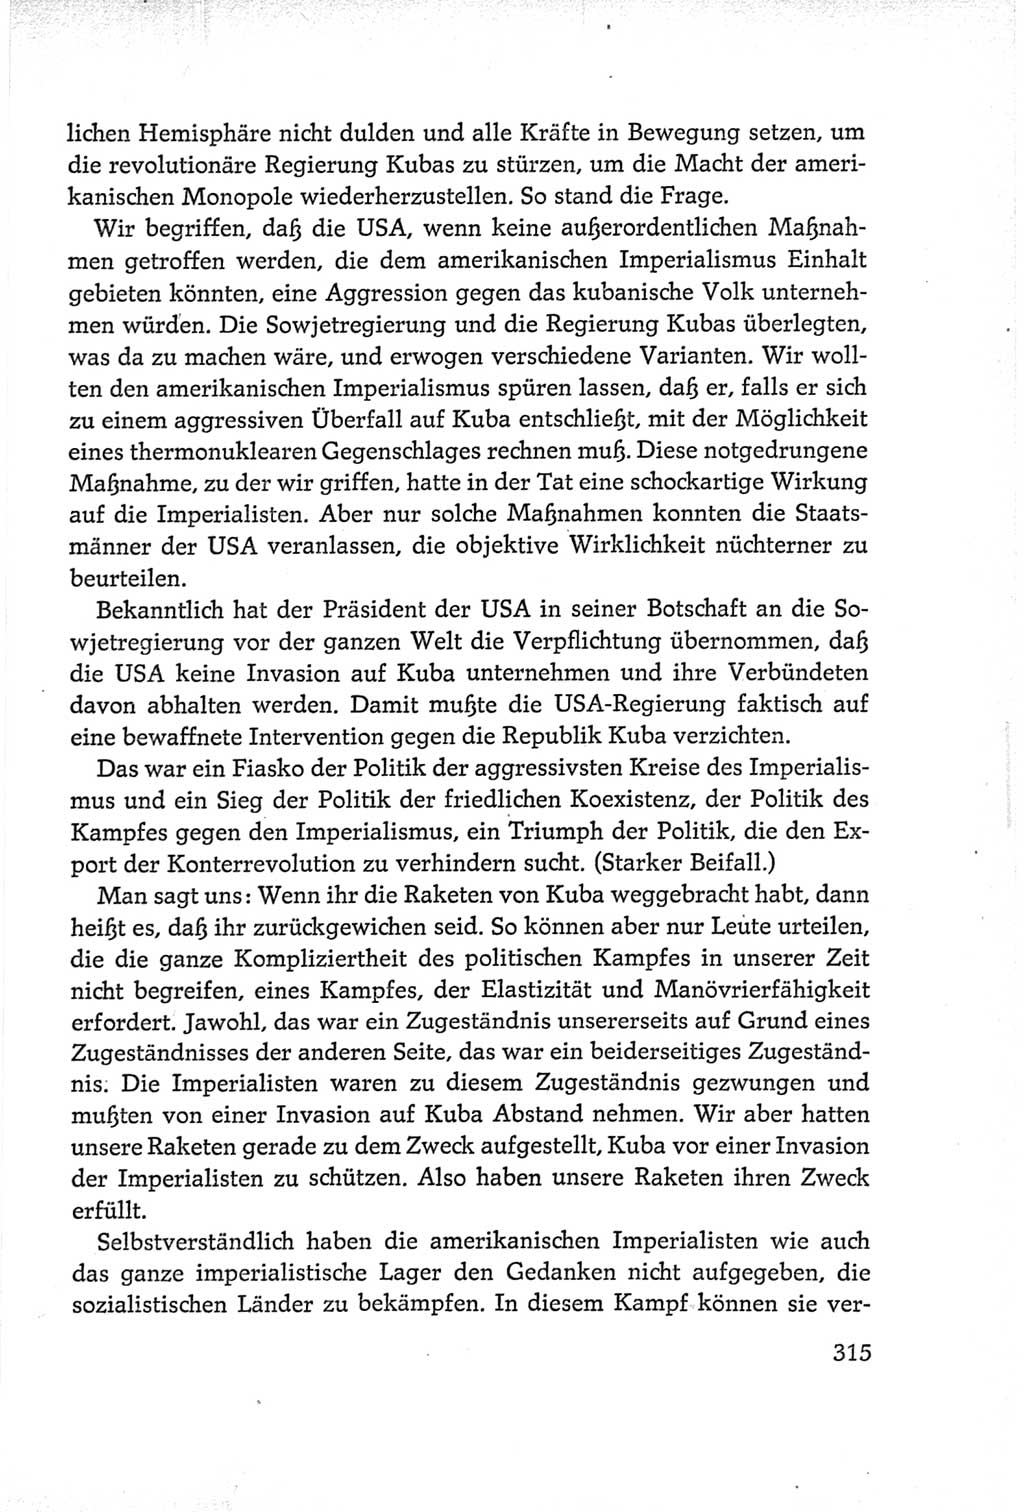 Protokoll der Verhandlungen des Ⅵ. Parteitages der Sozialistischen Einheitspartei Deutschlands (SED) [Deutsche Demokratische Republik (DDR)] 1963, Band Ⅰ, Seite 315 (Prot. Verh. Ⅵ. PT SED DDR 1963, Bd. Ⅰ, S. 315)